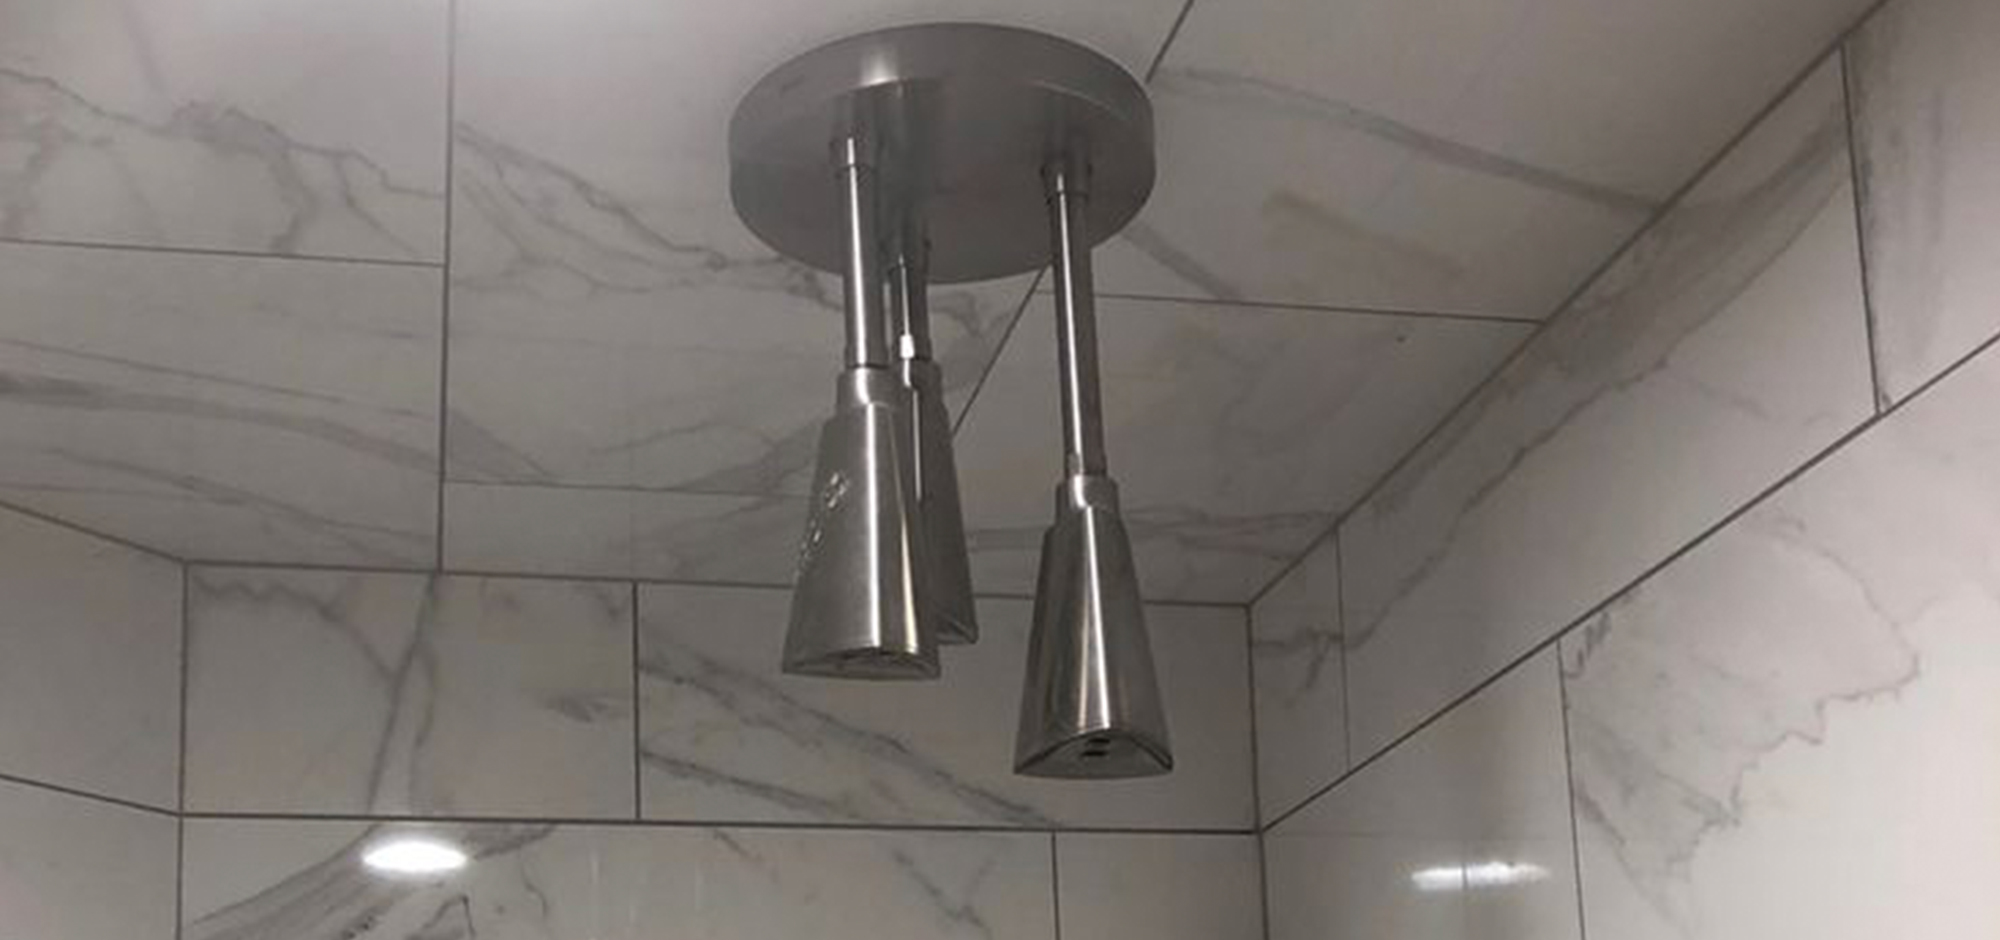 Shower faucet fixtures by Merritt Plumbing & Heating